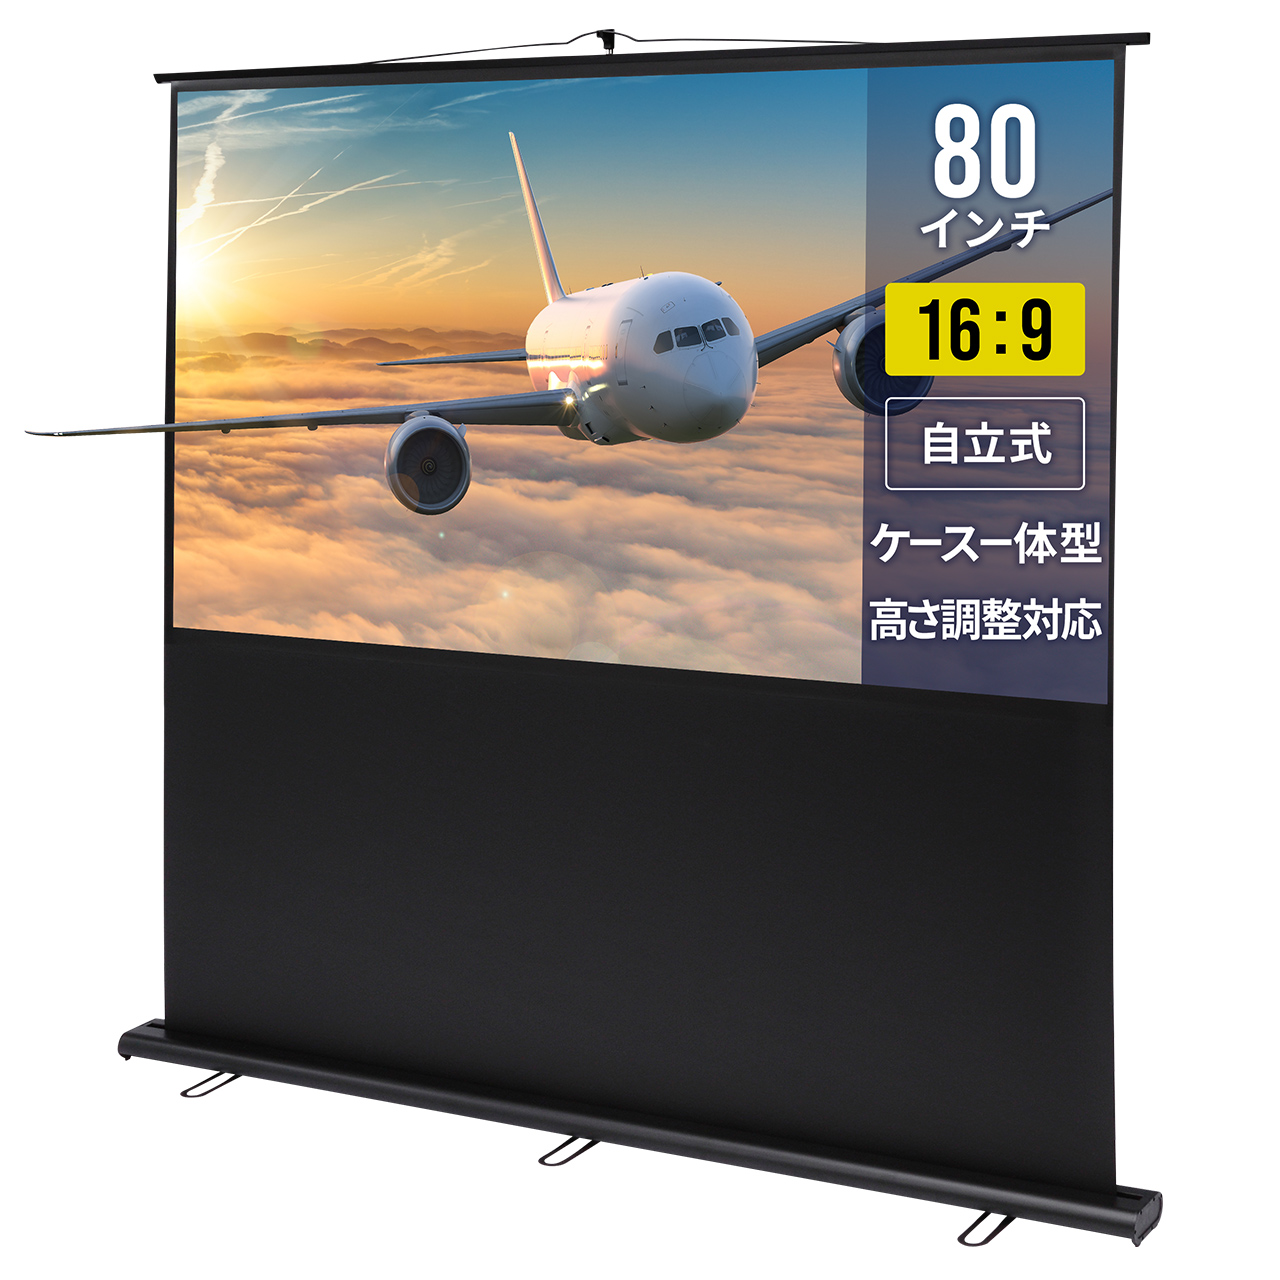 サンワサプライ プロジェクタースクリーン(床置き式) PRS-Y80HD - 事務機器